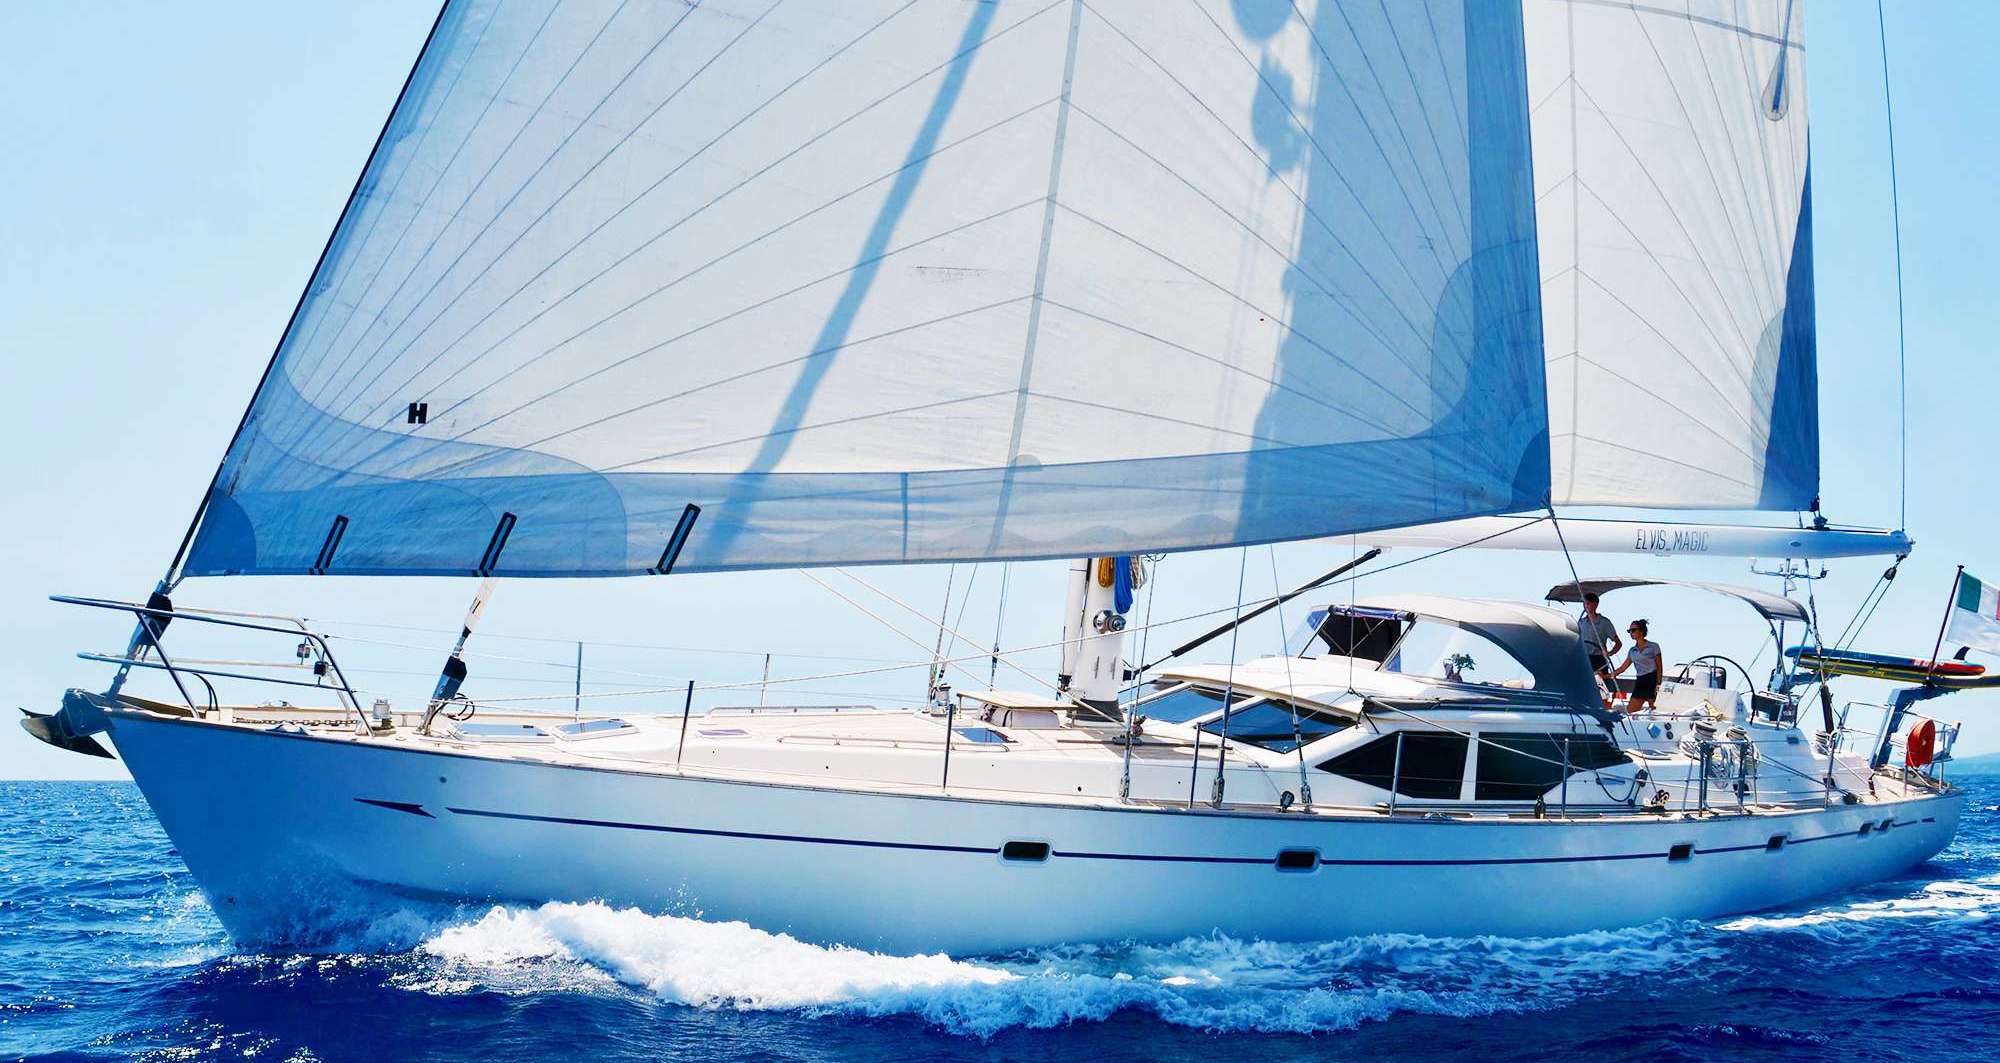 ELVIS MAGIC - Yacht Charter Rodney Bay & Boat hire in W. Med -Riviera/Cors/Sard., Bahamas, Caribbean Leewards, Caribbean Windwards 1